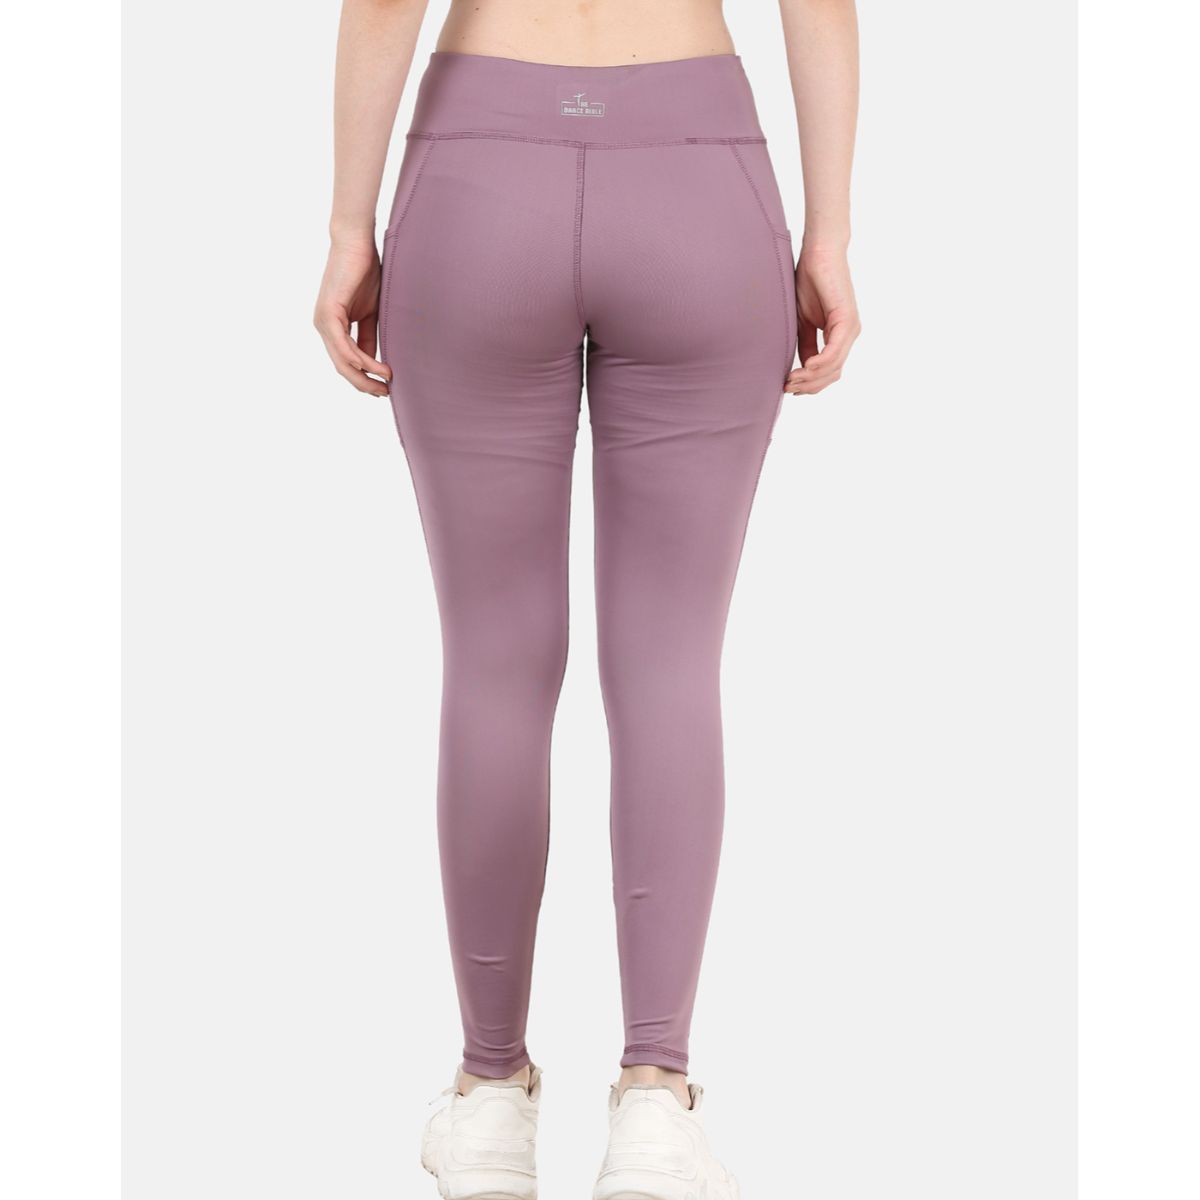 Dusty Pink Cassi Side Pockets Workout Leggings Yoga Pants - Women -  ShopperBoard